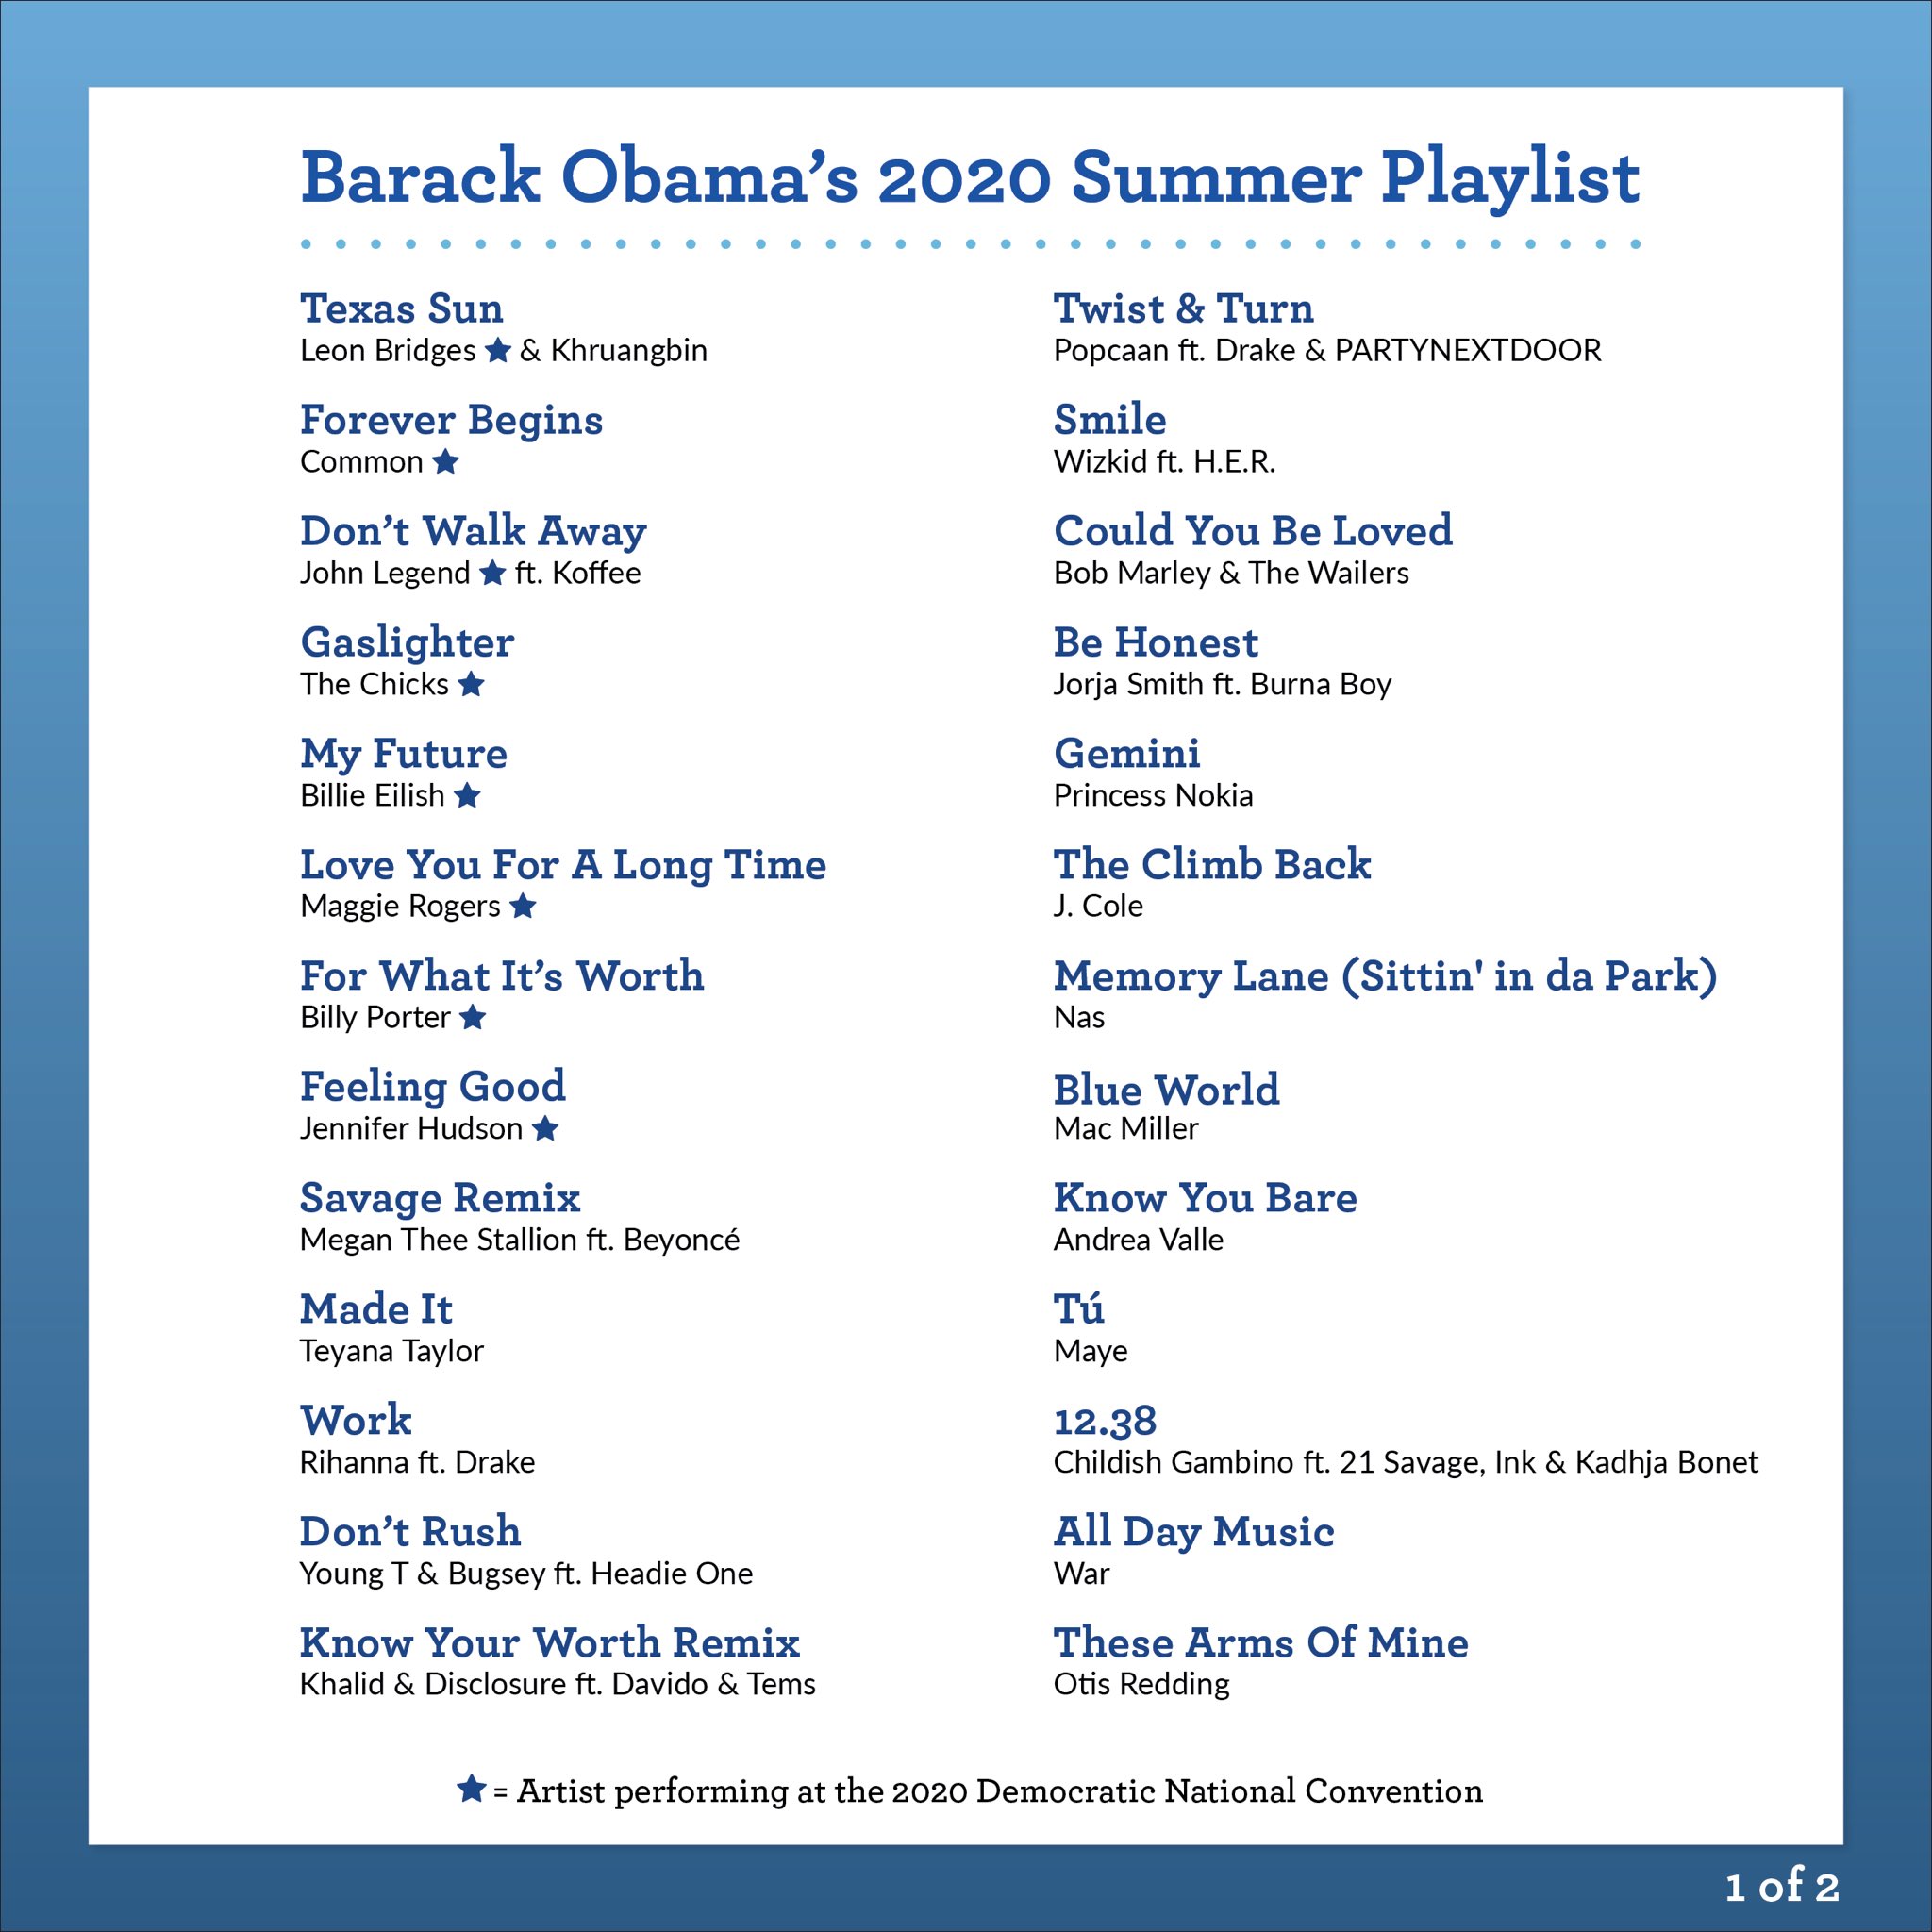 Wizkid on Obama Summer Playlist